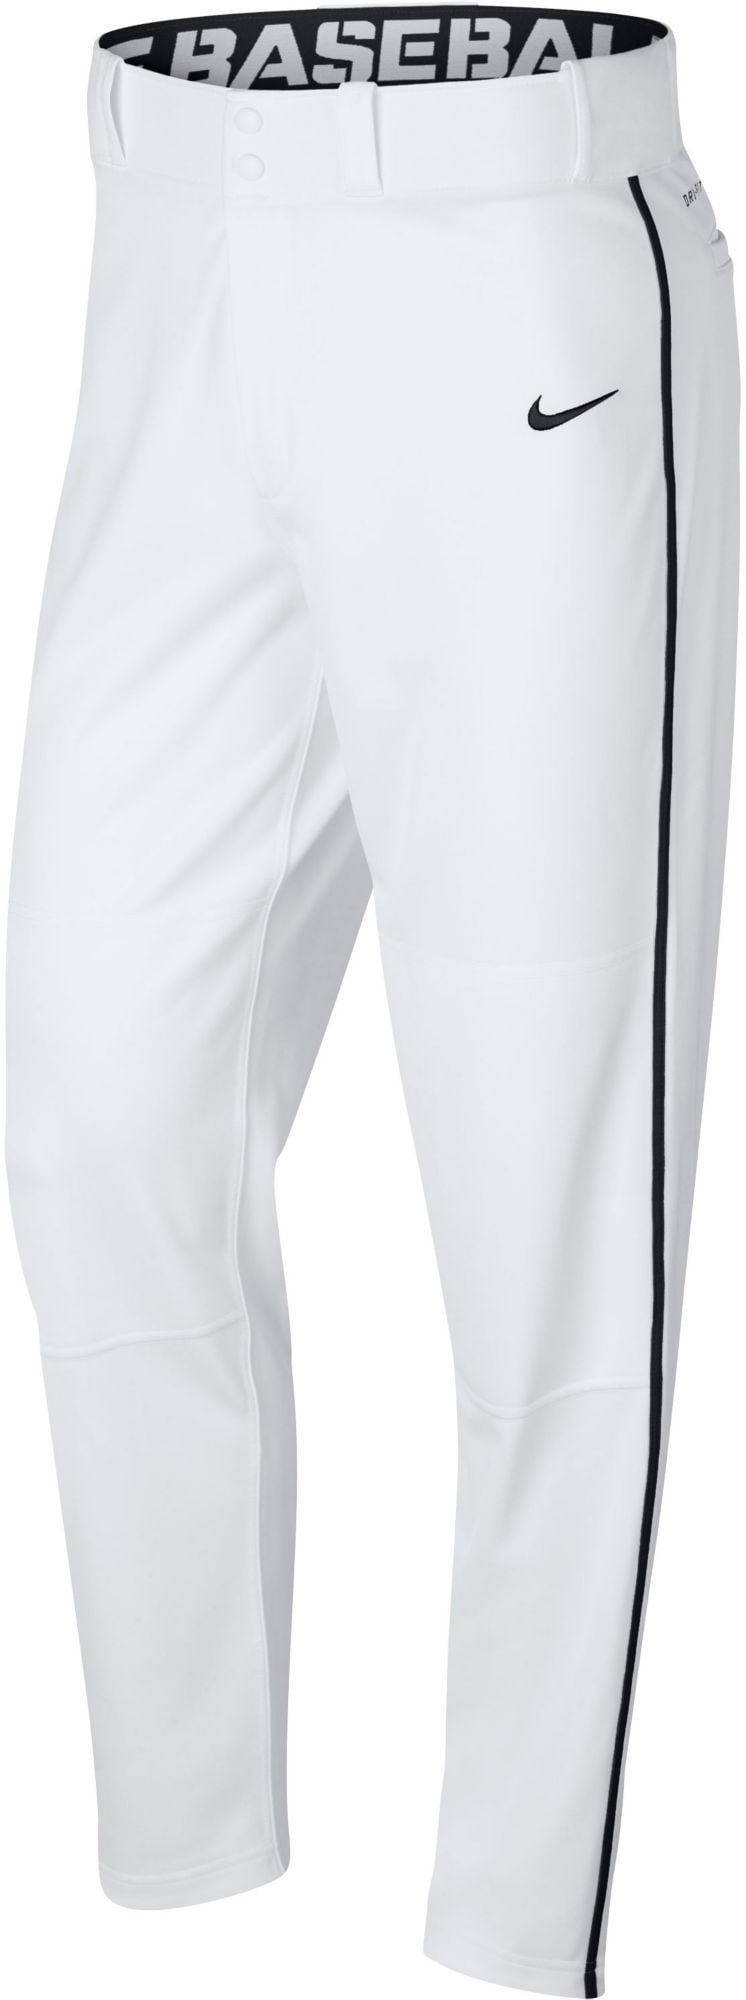 Nike Men's Swoosh Piped Dri-FIT Baseball Pants, White ...